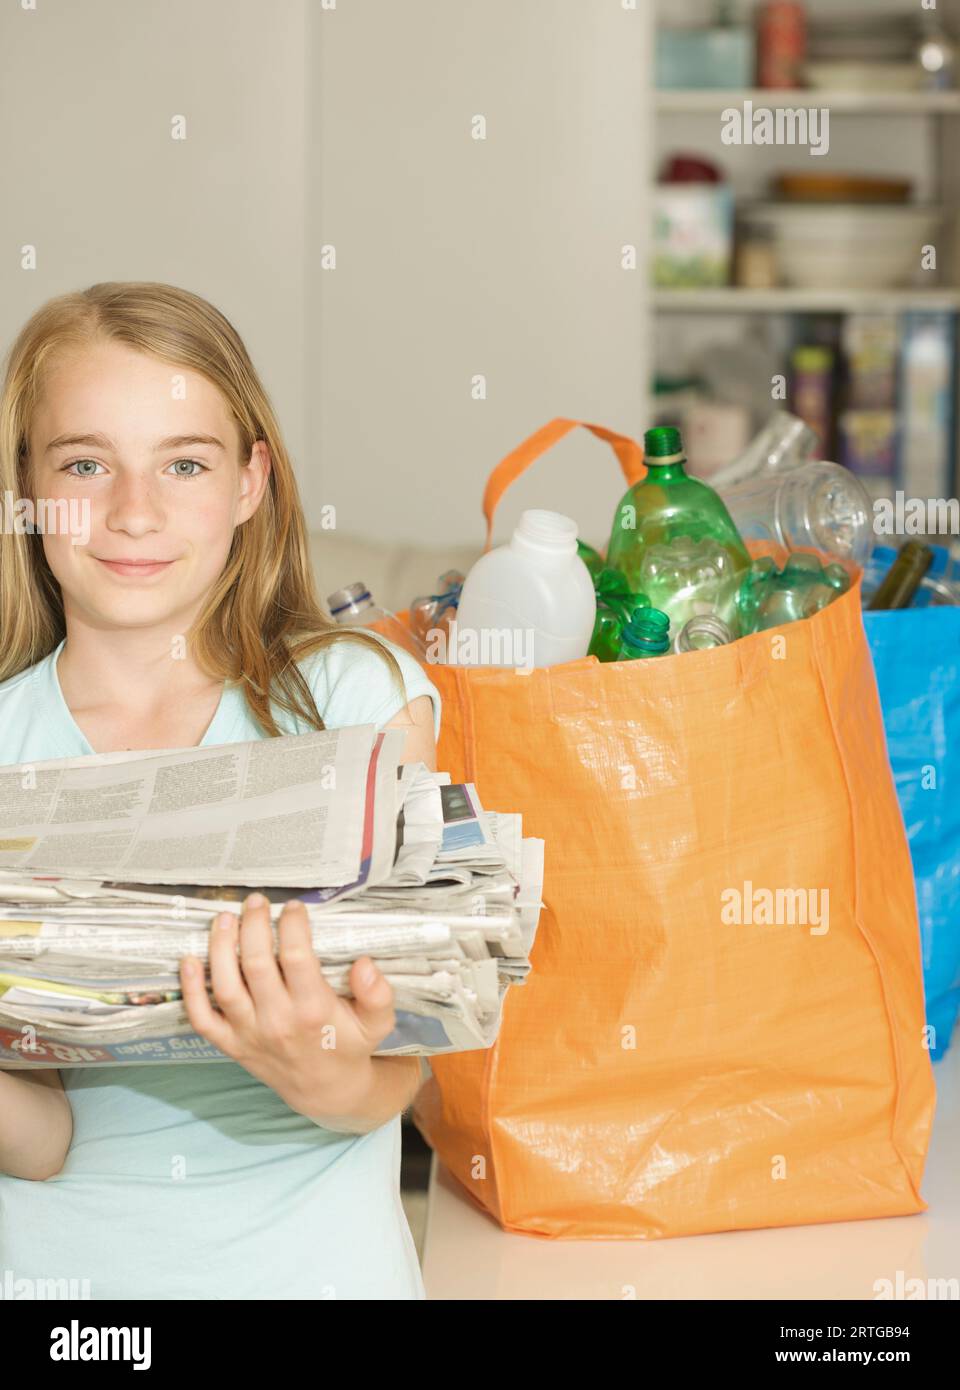 Jeune fille debout à côté de sacs de recyclage tenant une pile de journaux Banque D'Images